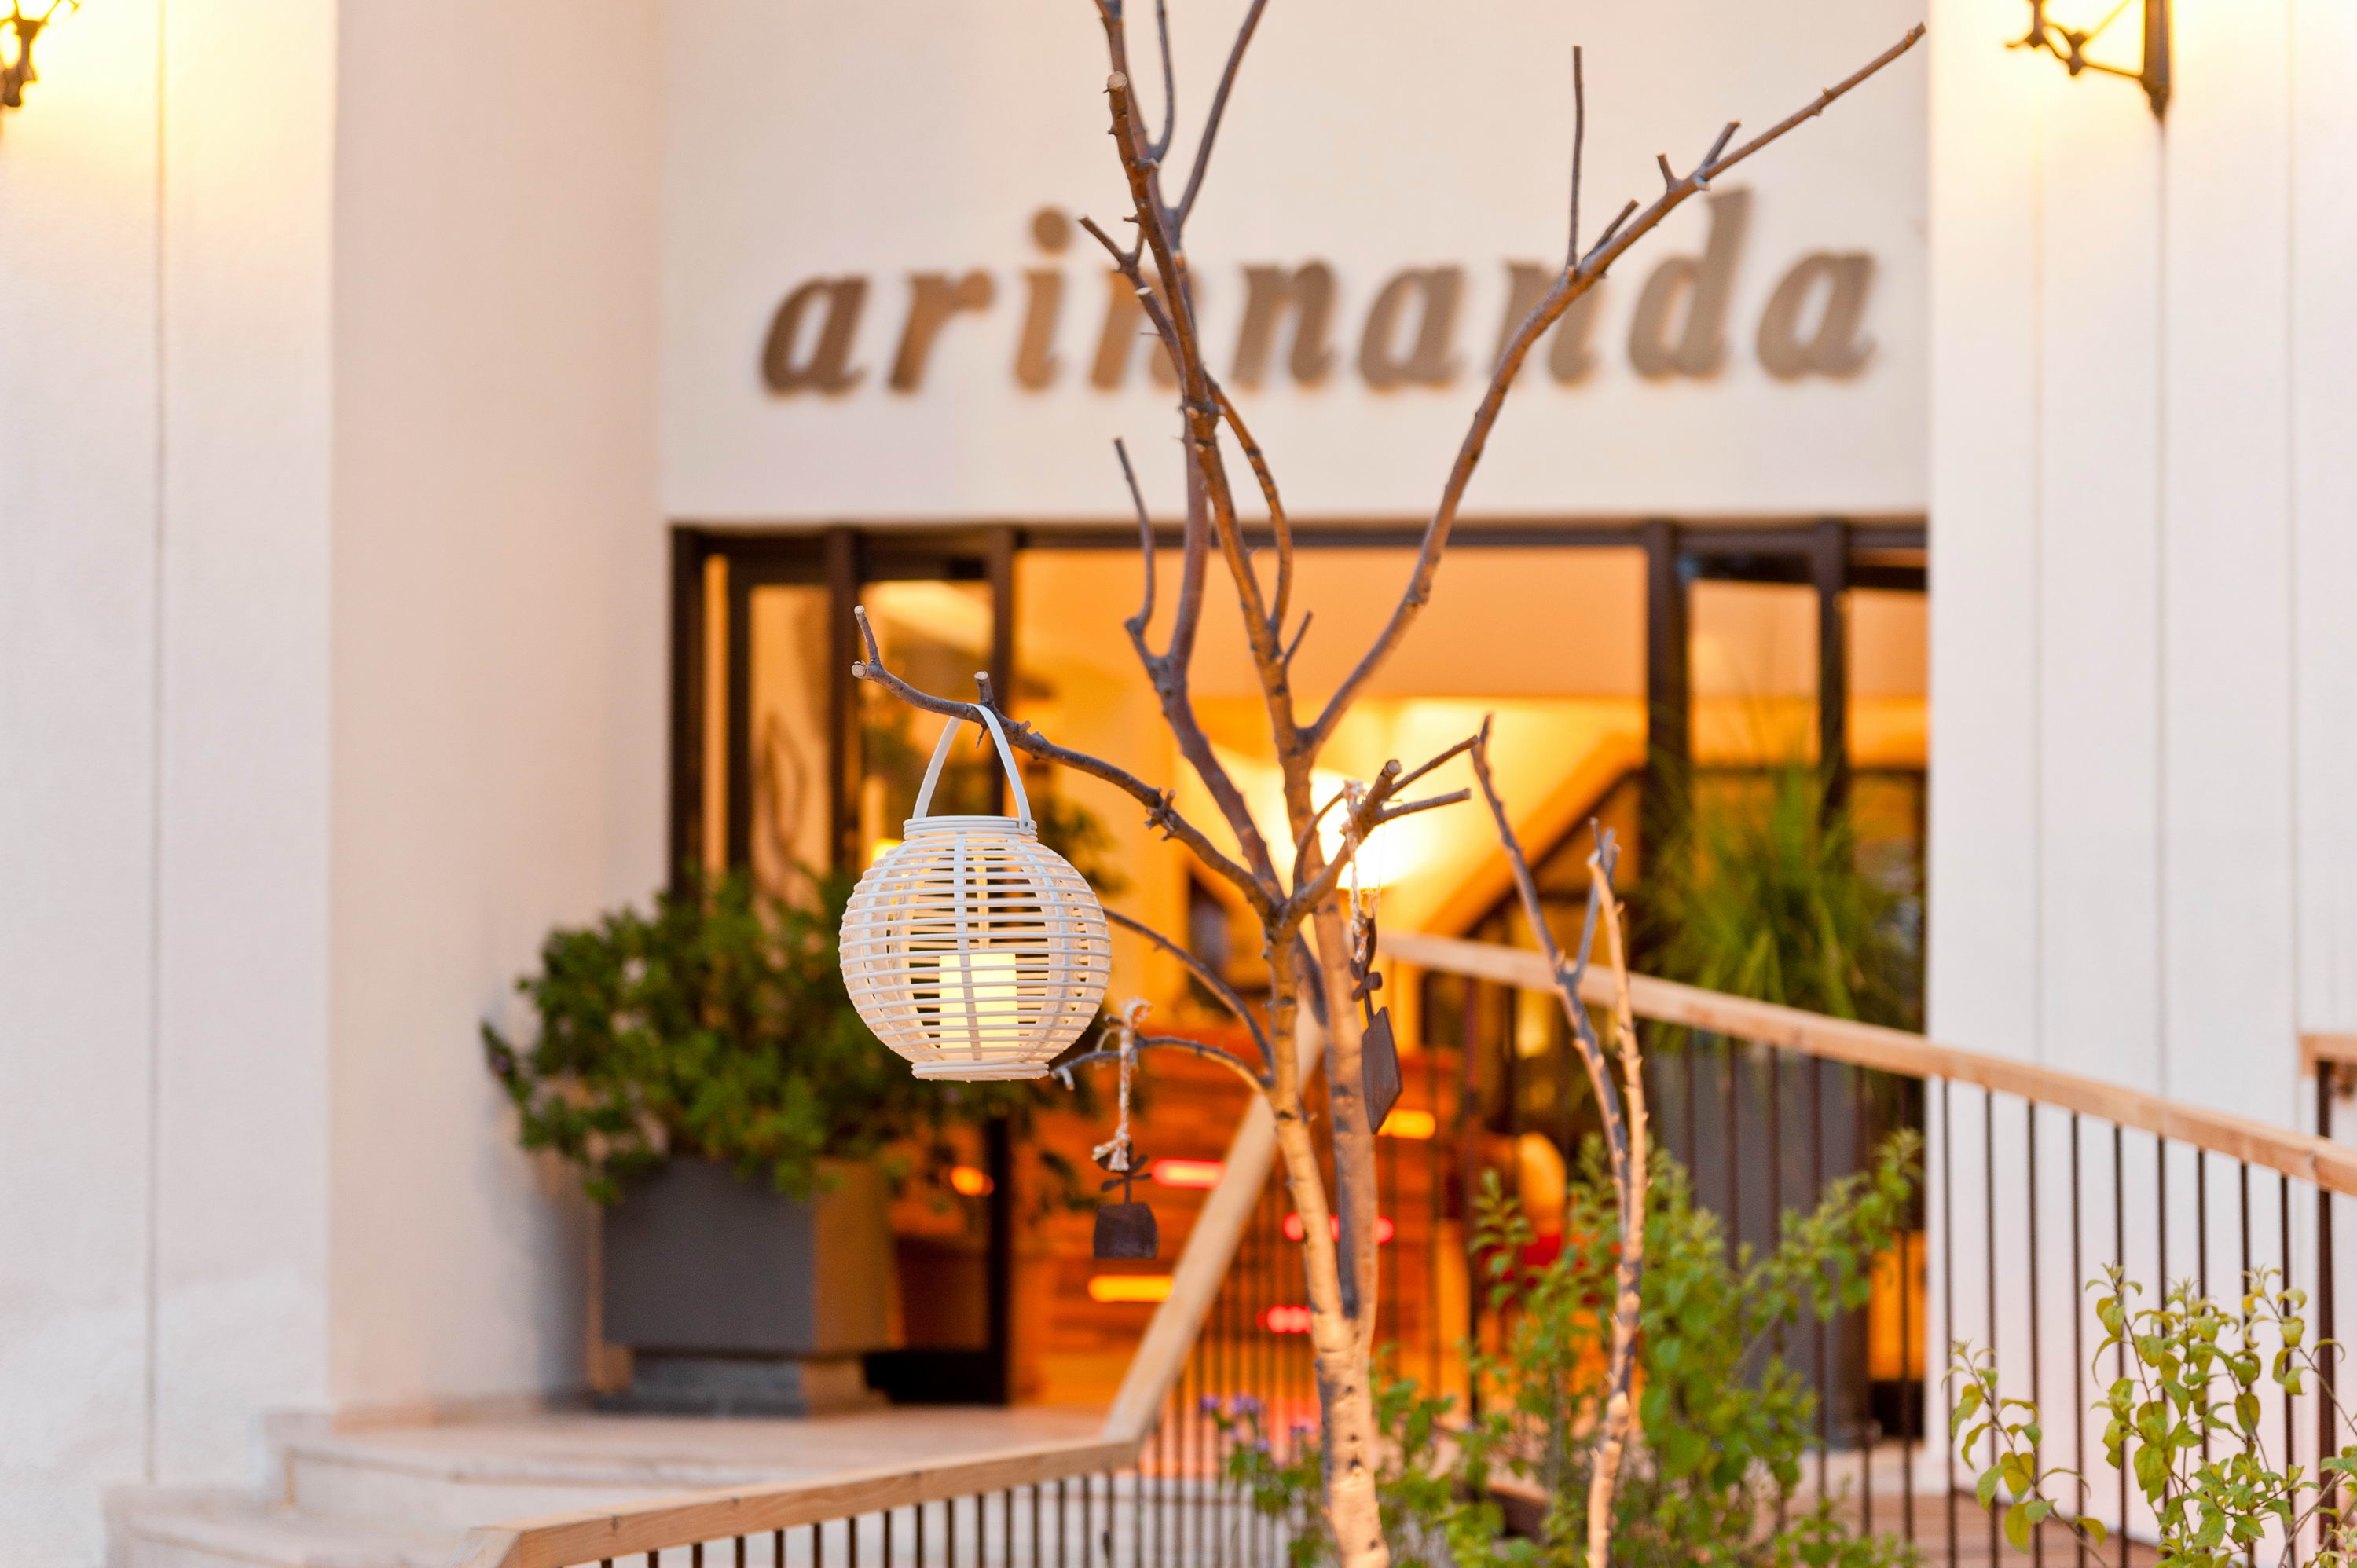 Hotel Arinnanda